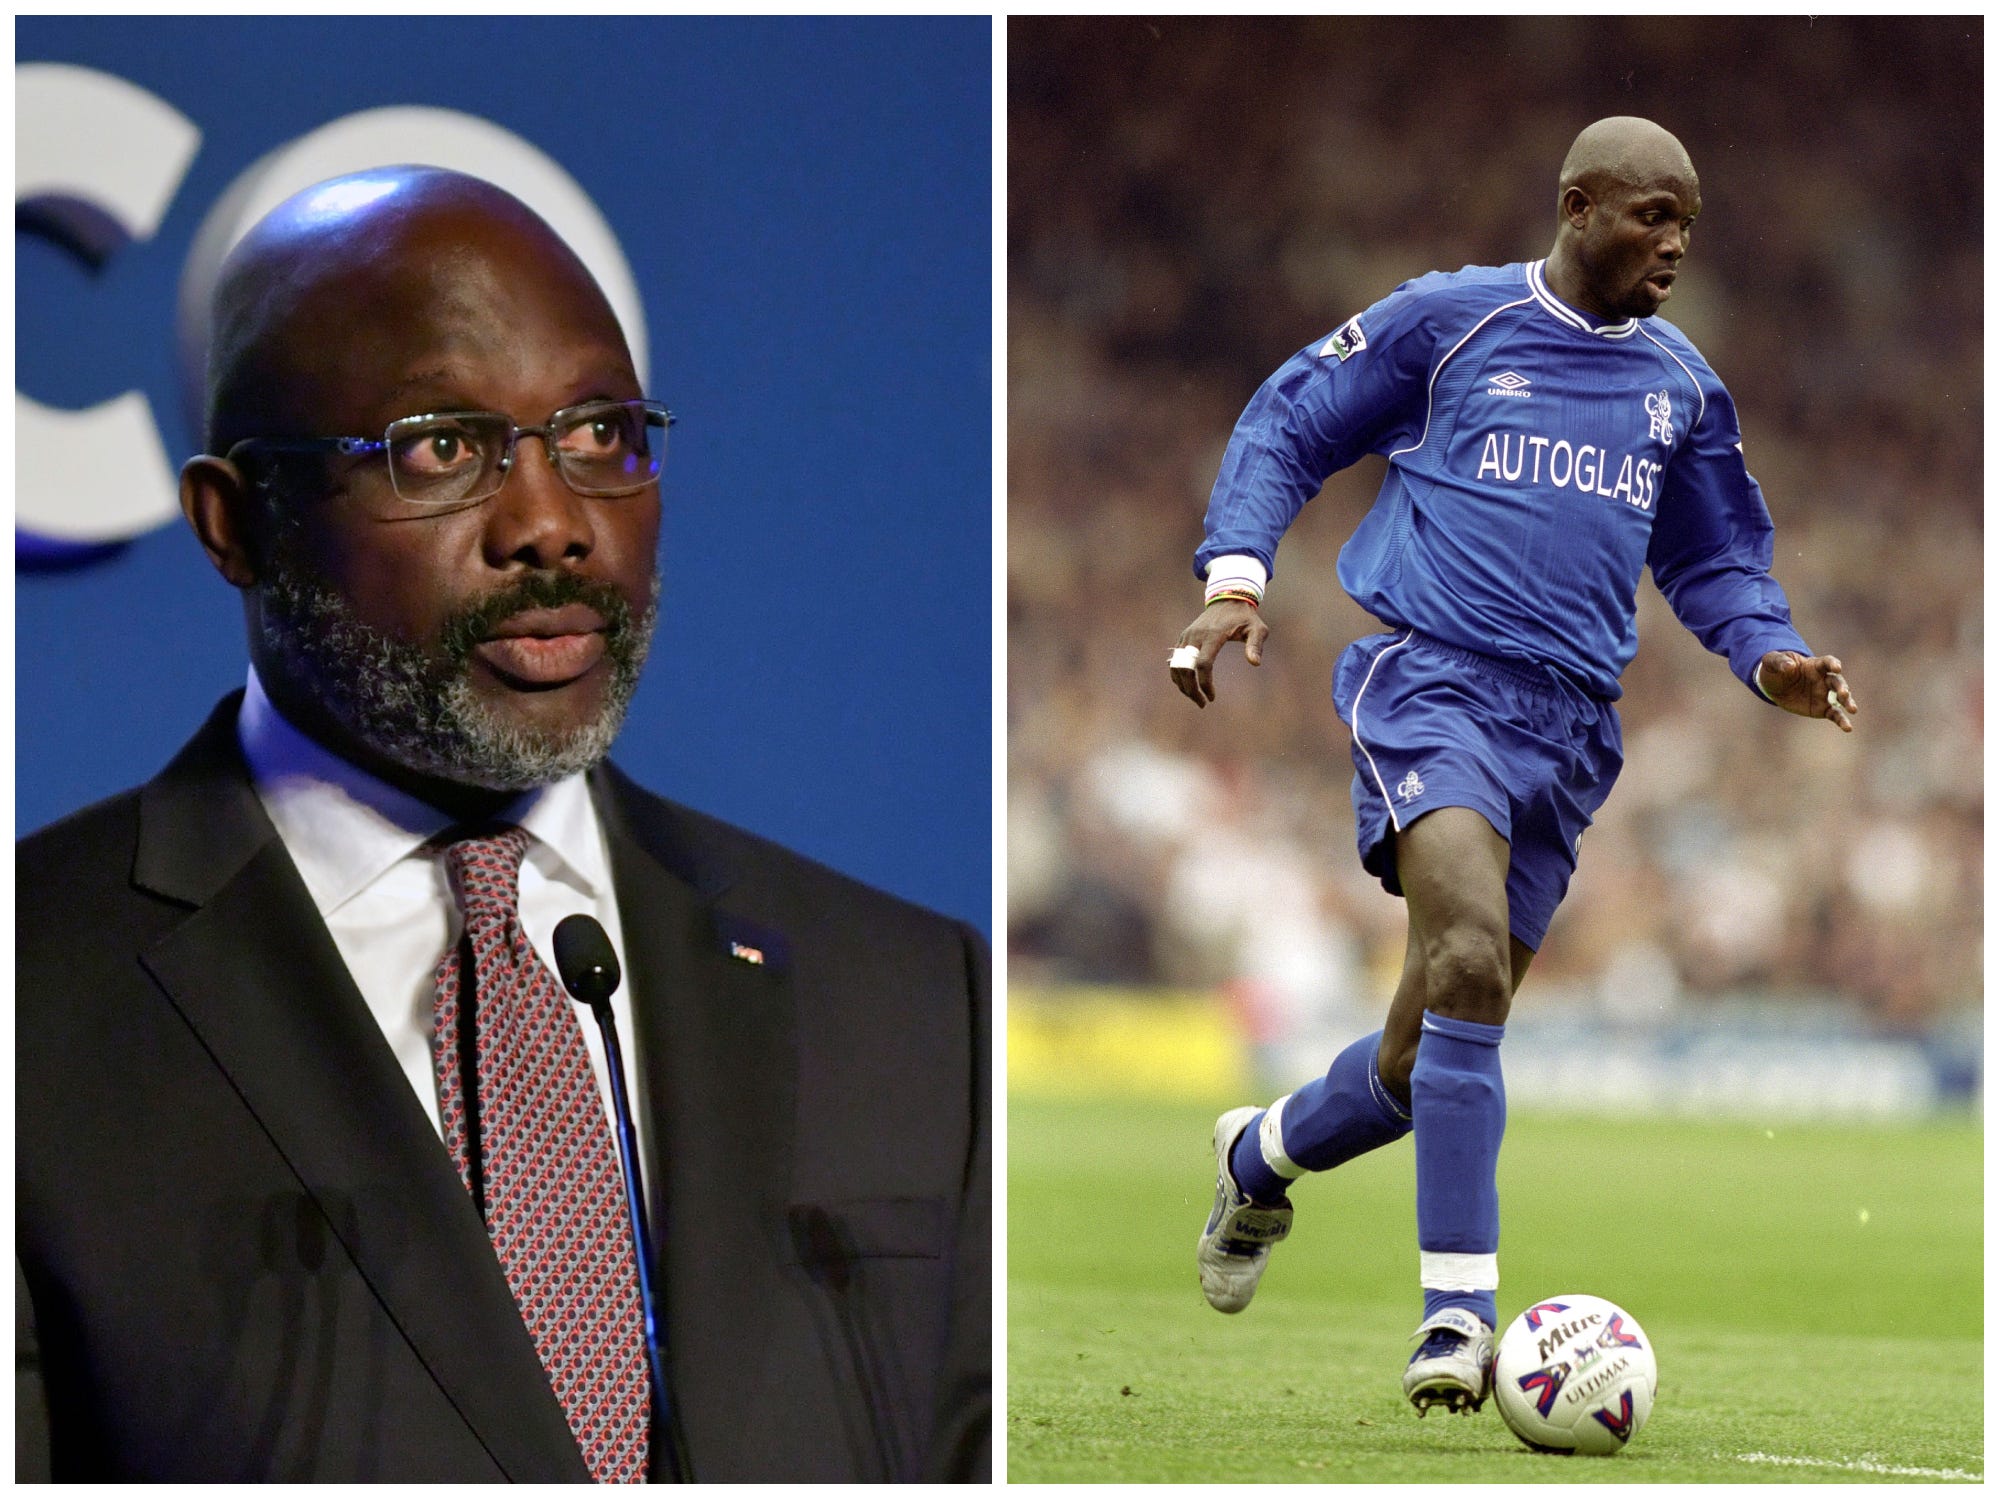 De Liberiaanse president George Weah in 2021, en Weah spelend voor voetbalclub Chelsea in 2000.